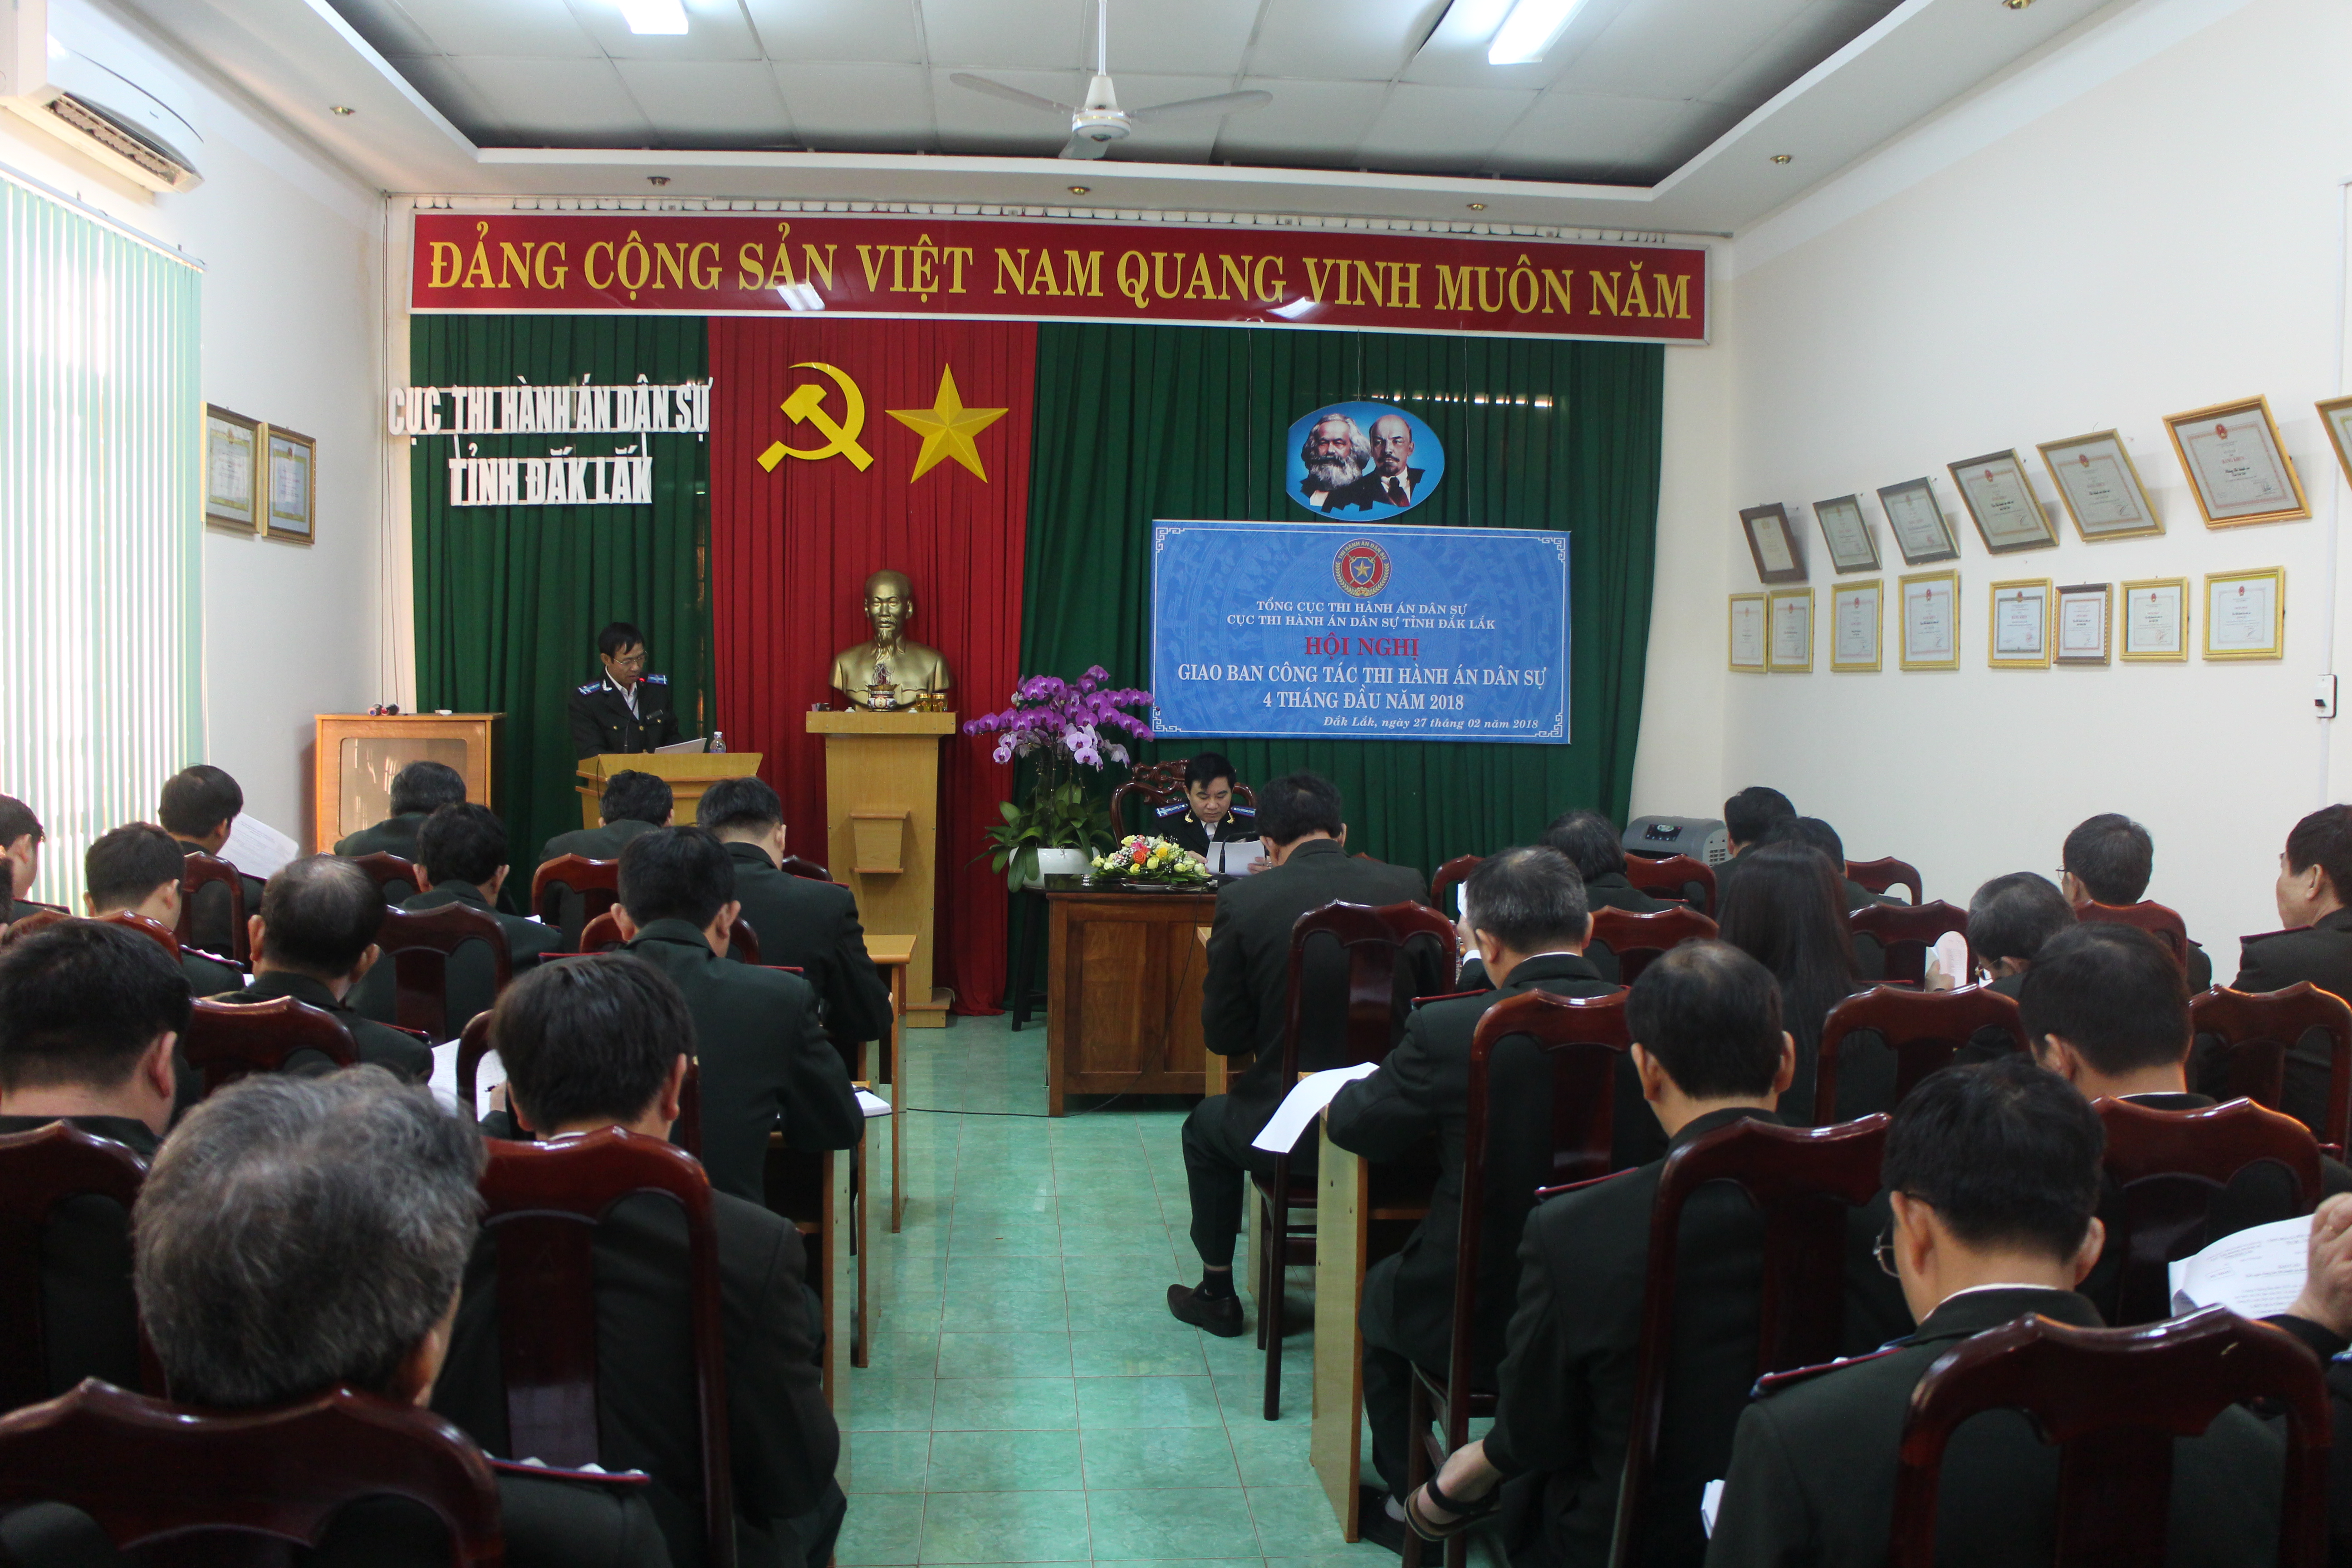 Cục Thi hành án dân sự tỉnh Đắk Lắk tổ chức Hội nghị giao ban công tác Thi hành án dân sự và theo dõi thi hành án hành chính 04 tháng đầu năm 2018